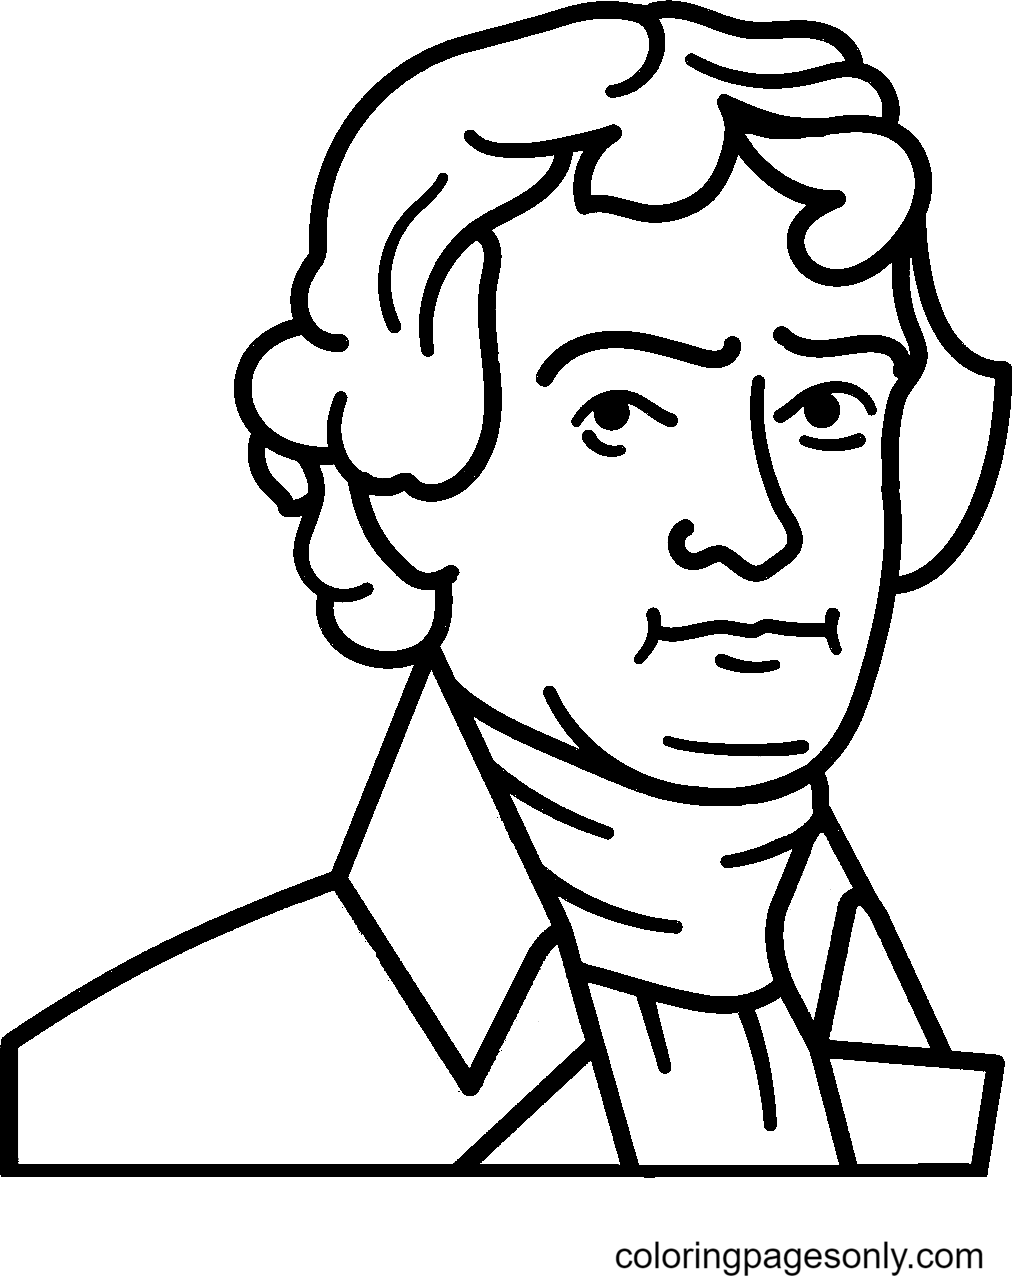 El ex presidente estadounidense Thomas Jefferson de Thomas Jefferson